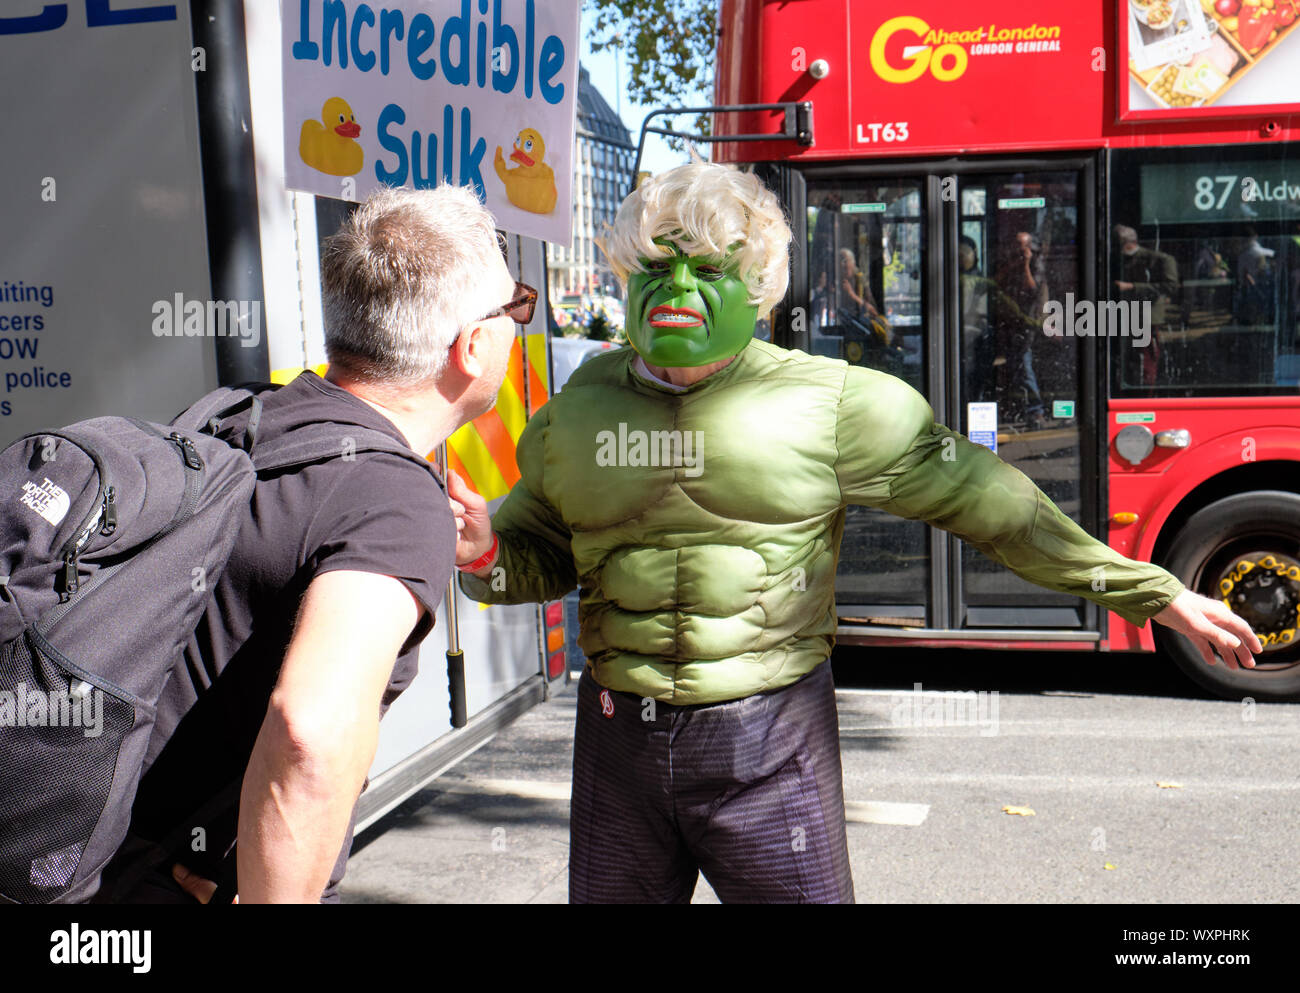 Pro restent partisans en costume avec une incroyable Hulk bouder devant la Cour suprême de Londres en présence d'un partisan de congé Banque D'Images